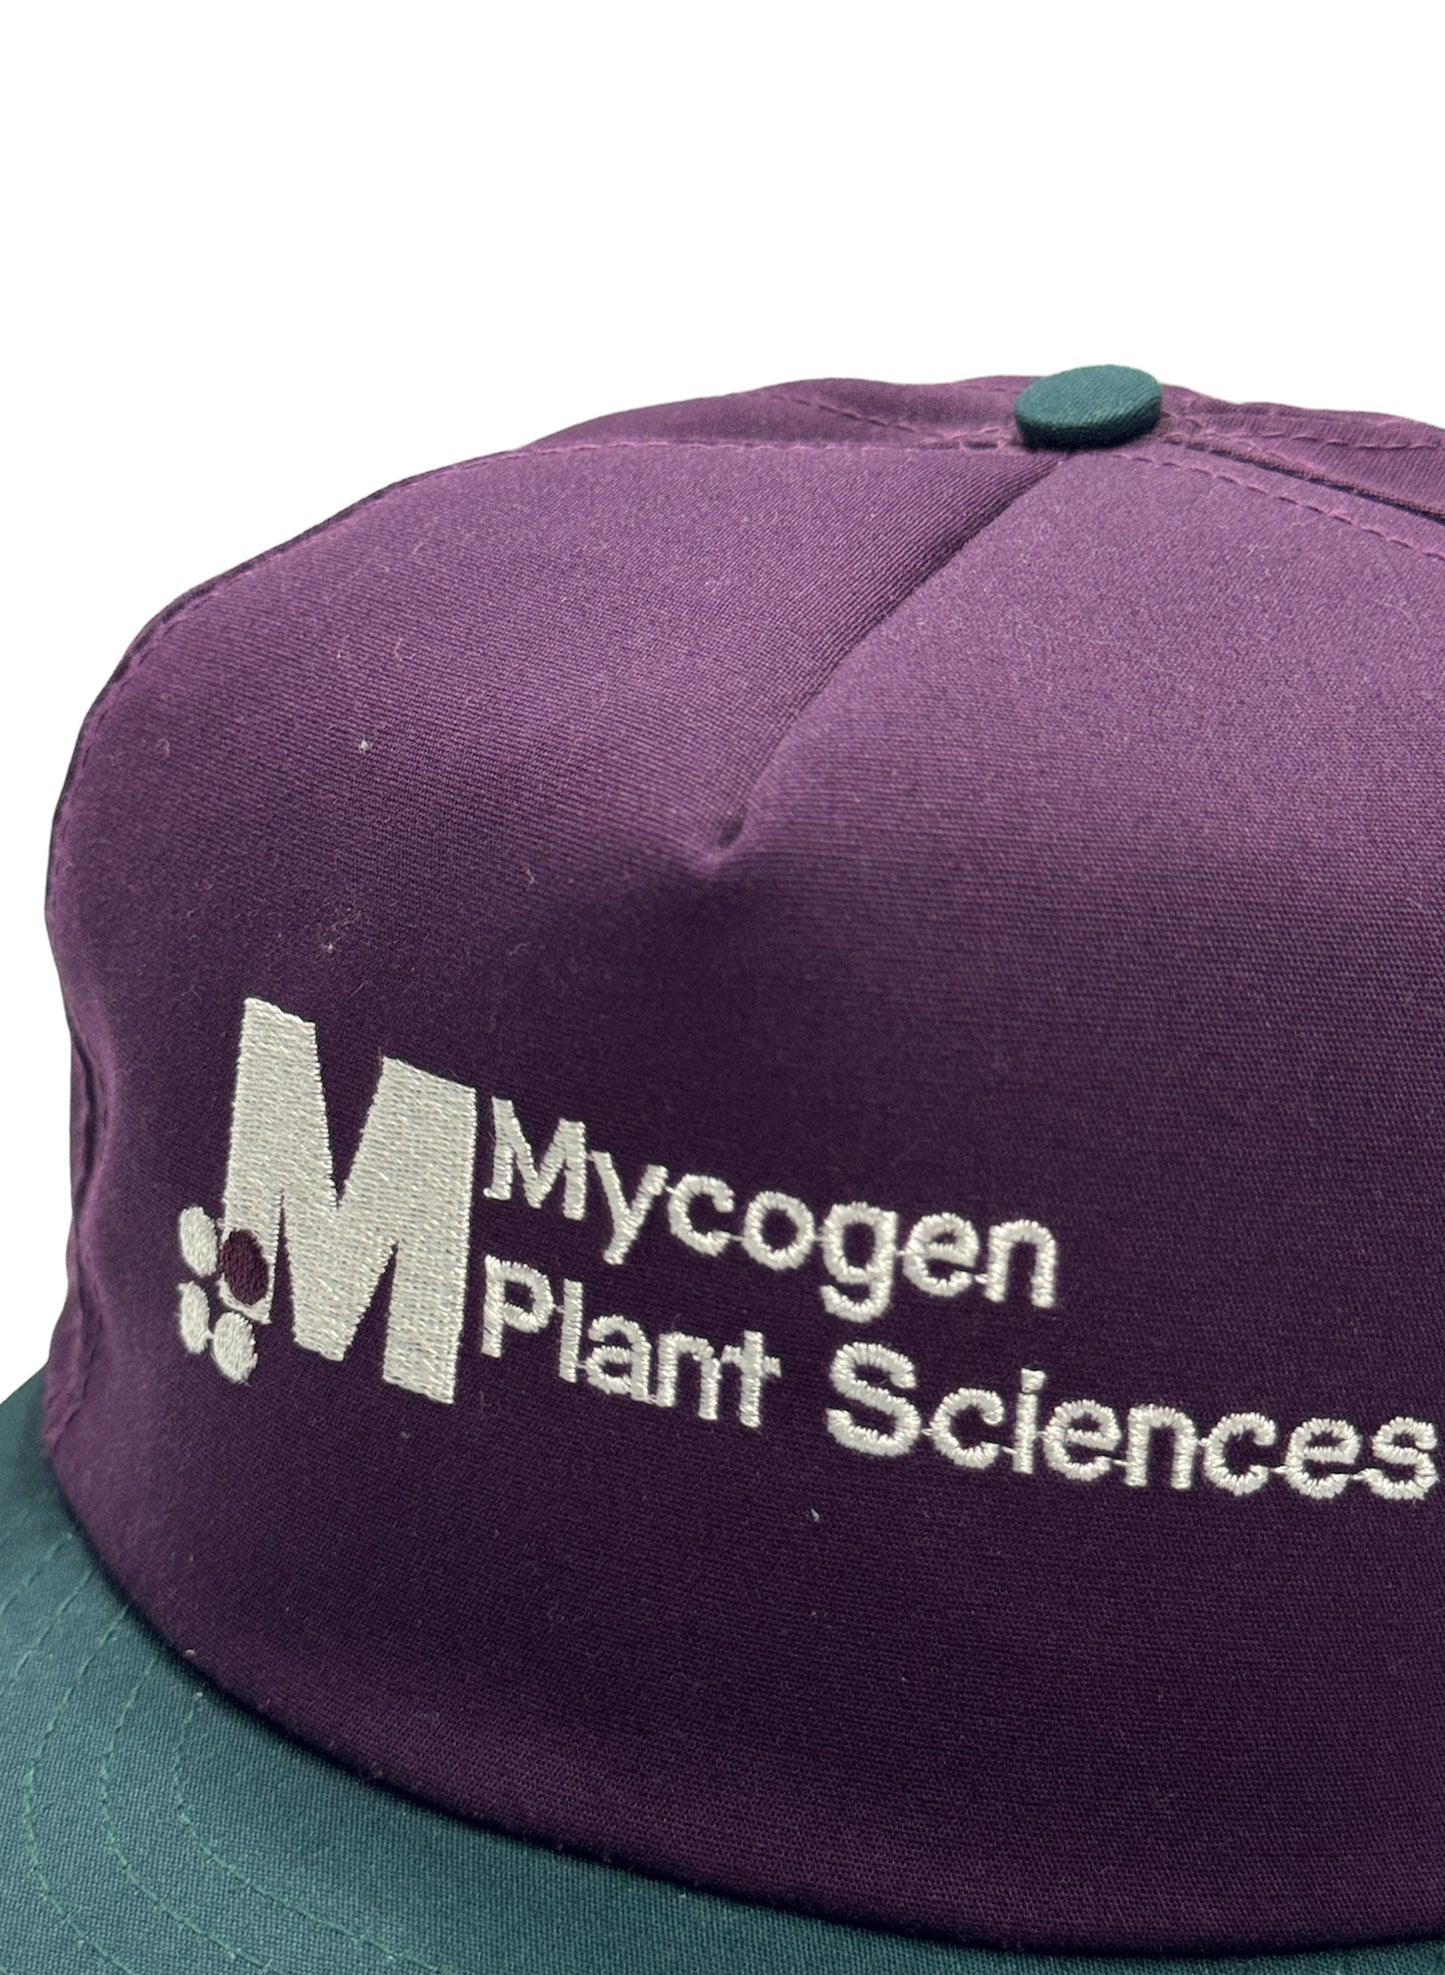 (SUP-098) VINTAGE TRUKER CAP “Mycogen Plant Scienes"